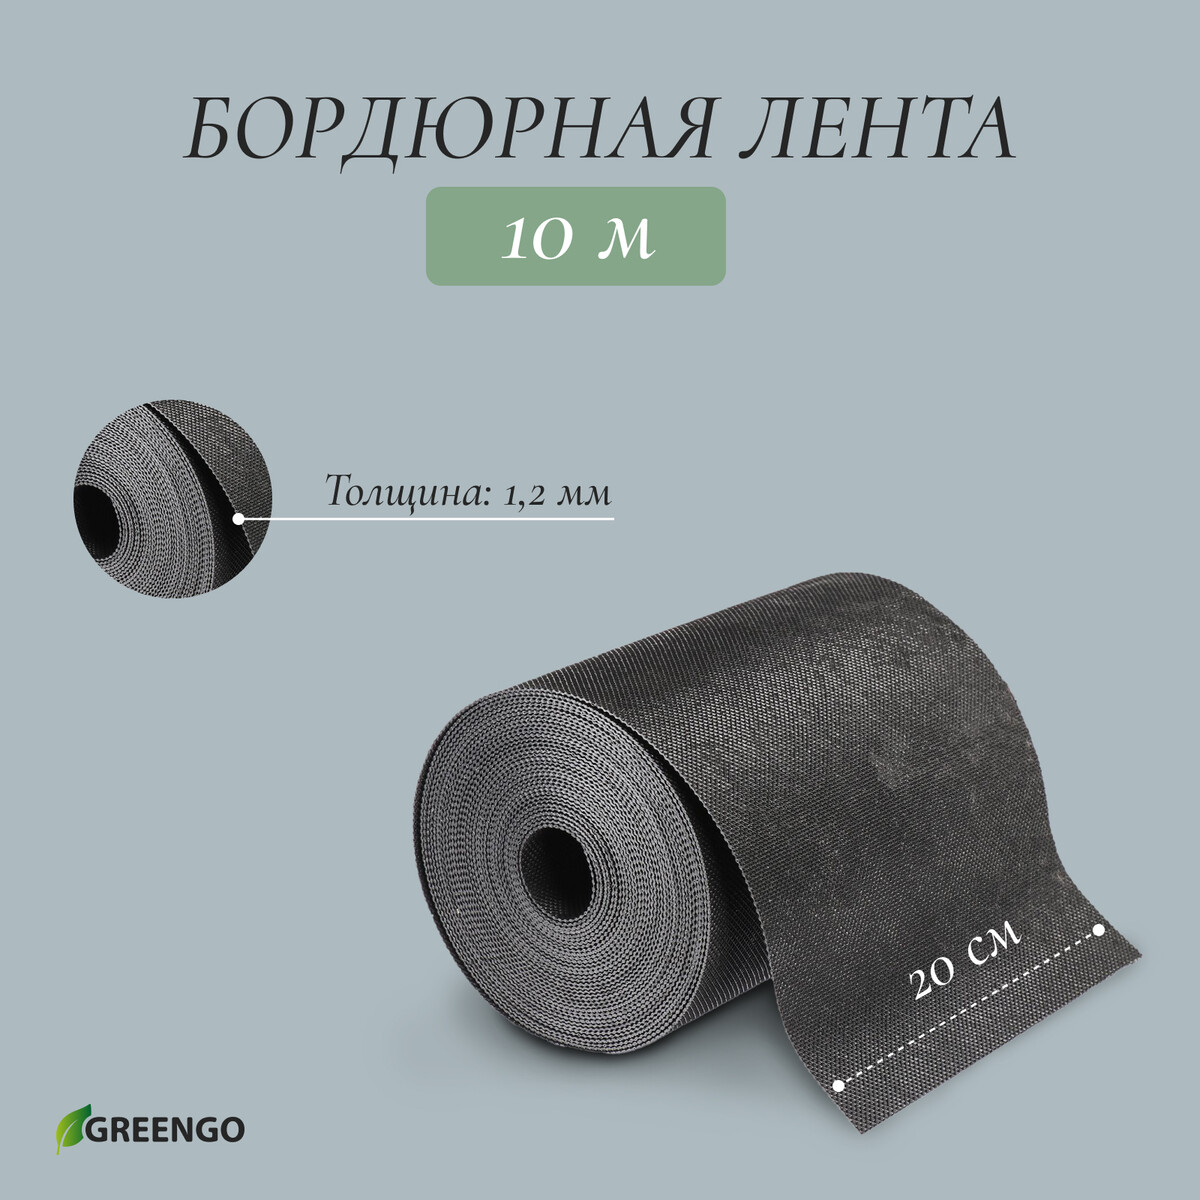 Лента бордюрная, 0.2 × 10 м, толщина 1.2 мм, пластиковая, черная, greengo кассета для рассады на 6 ячеек по 120 мл пластиковая черная 18 × 13 × 6 см в наборе 10 шт greengo